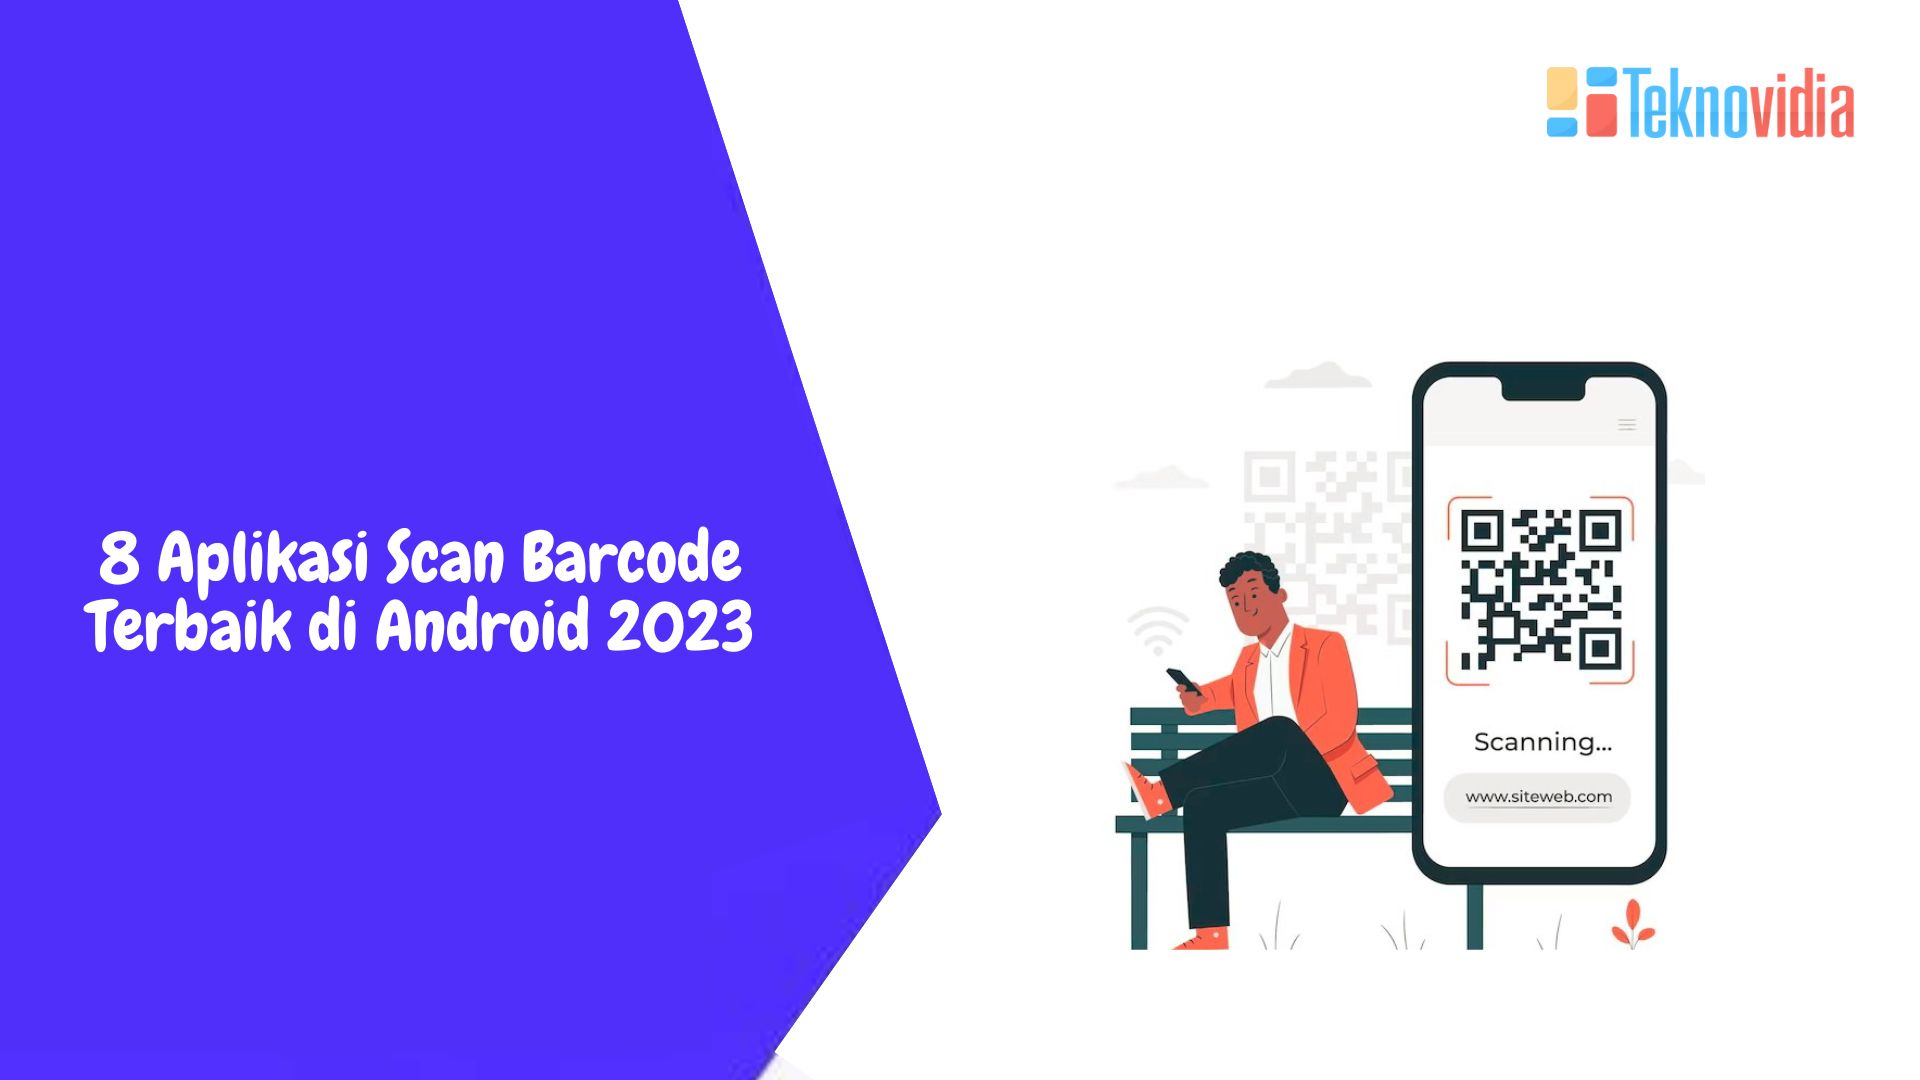 8 Aplikasi Scan Barcode Terbaik di Android 2023